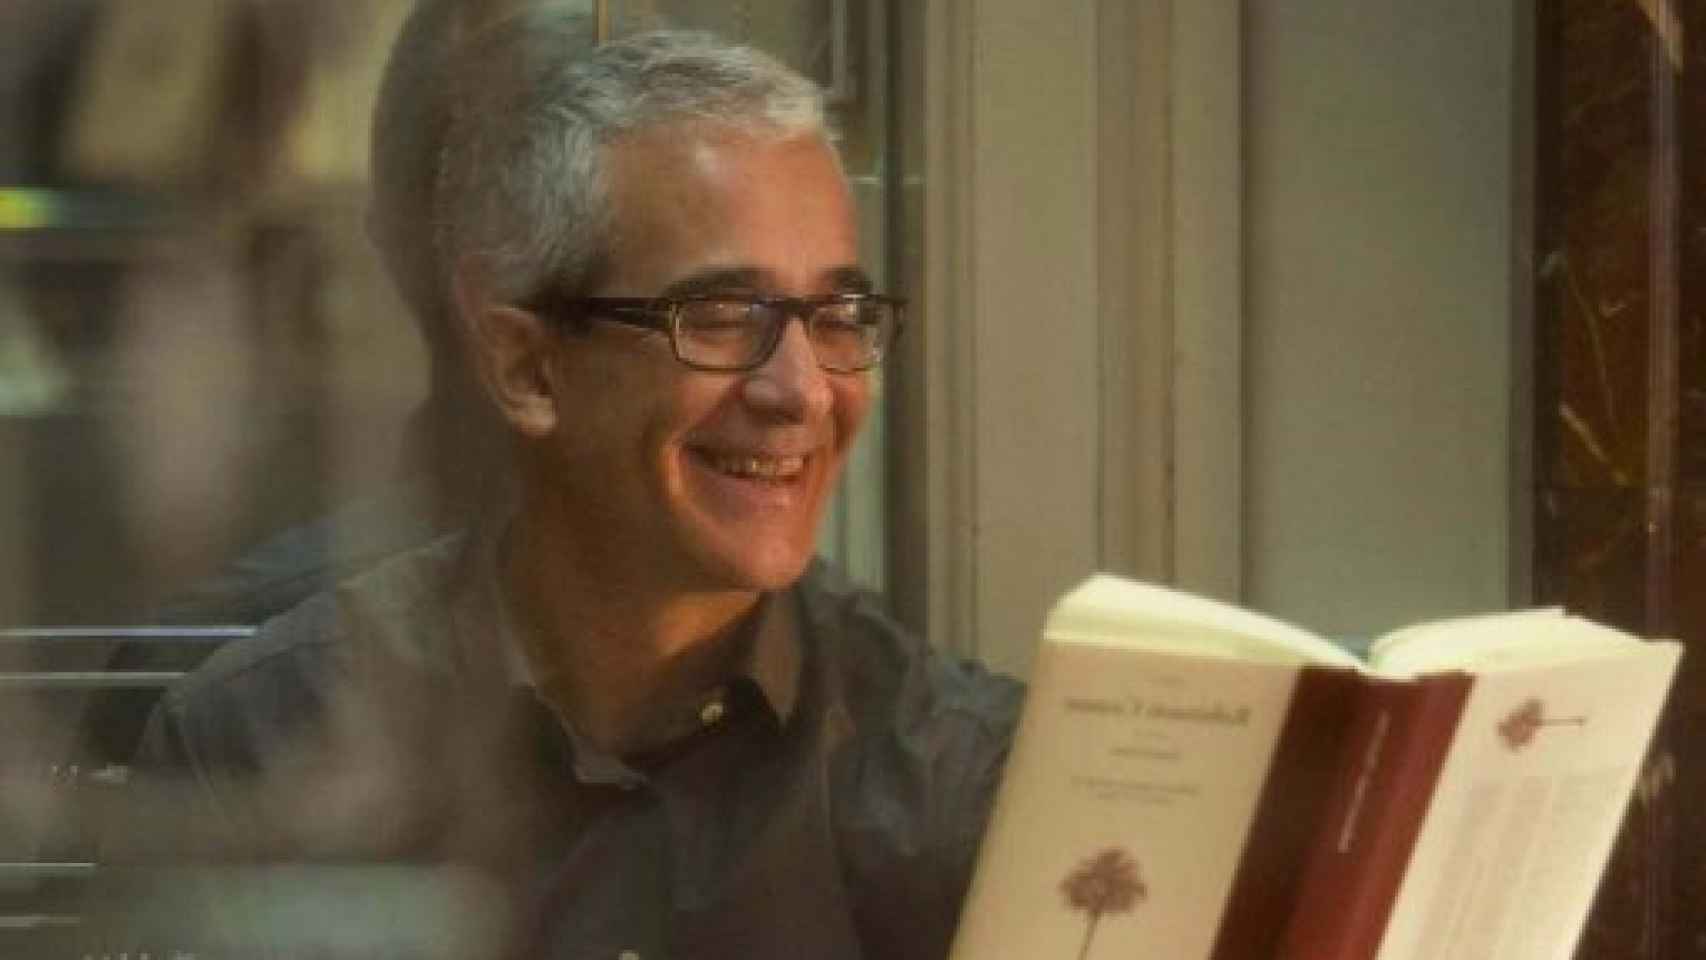 Image: Muere el escritor Enrique de Hériz a los 55 años